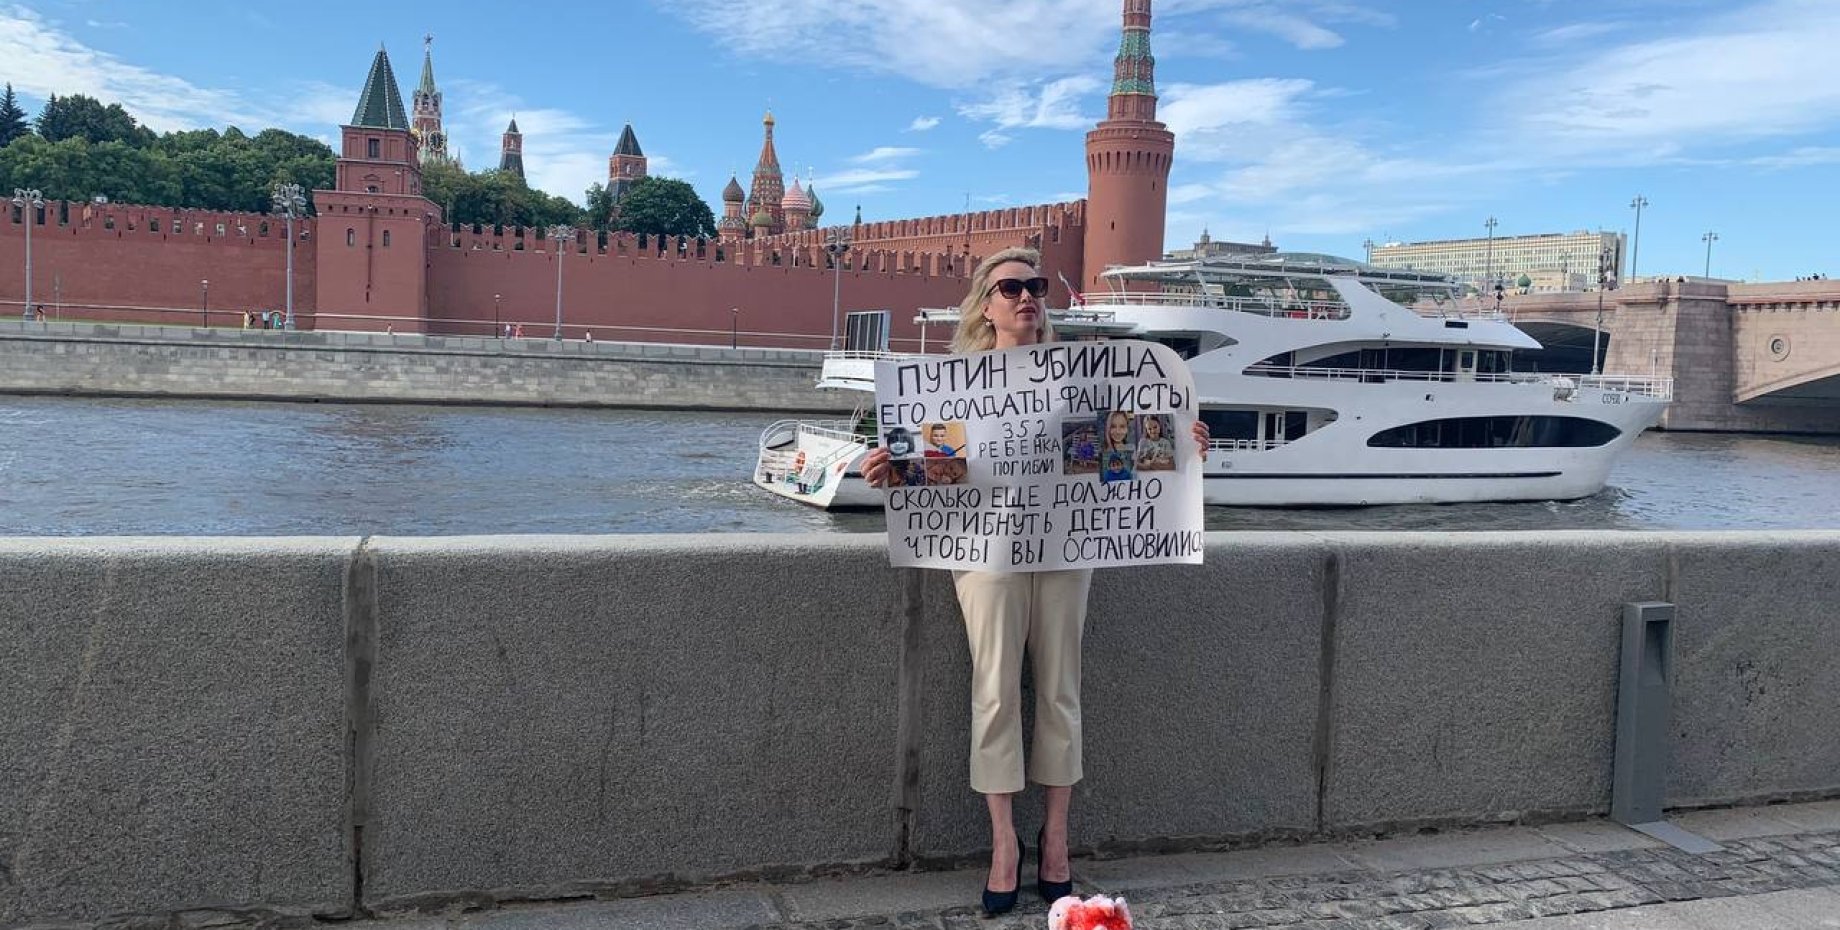 Правда 1 канал. Овсянникова с плакатом на набережной Москвы. Фотосессия возле Кремля. Софийская набережная.